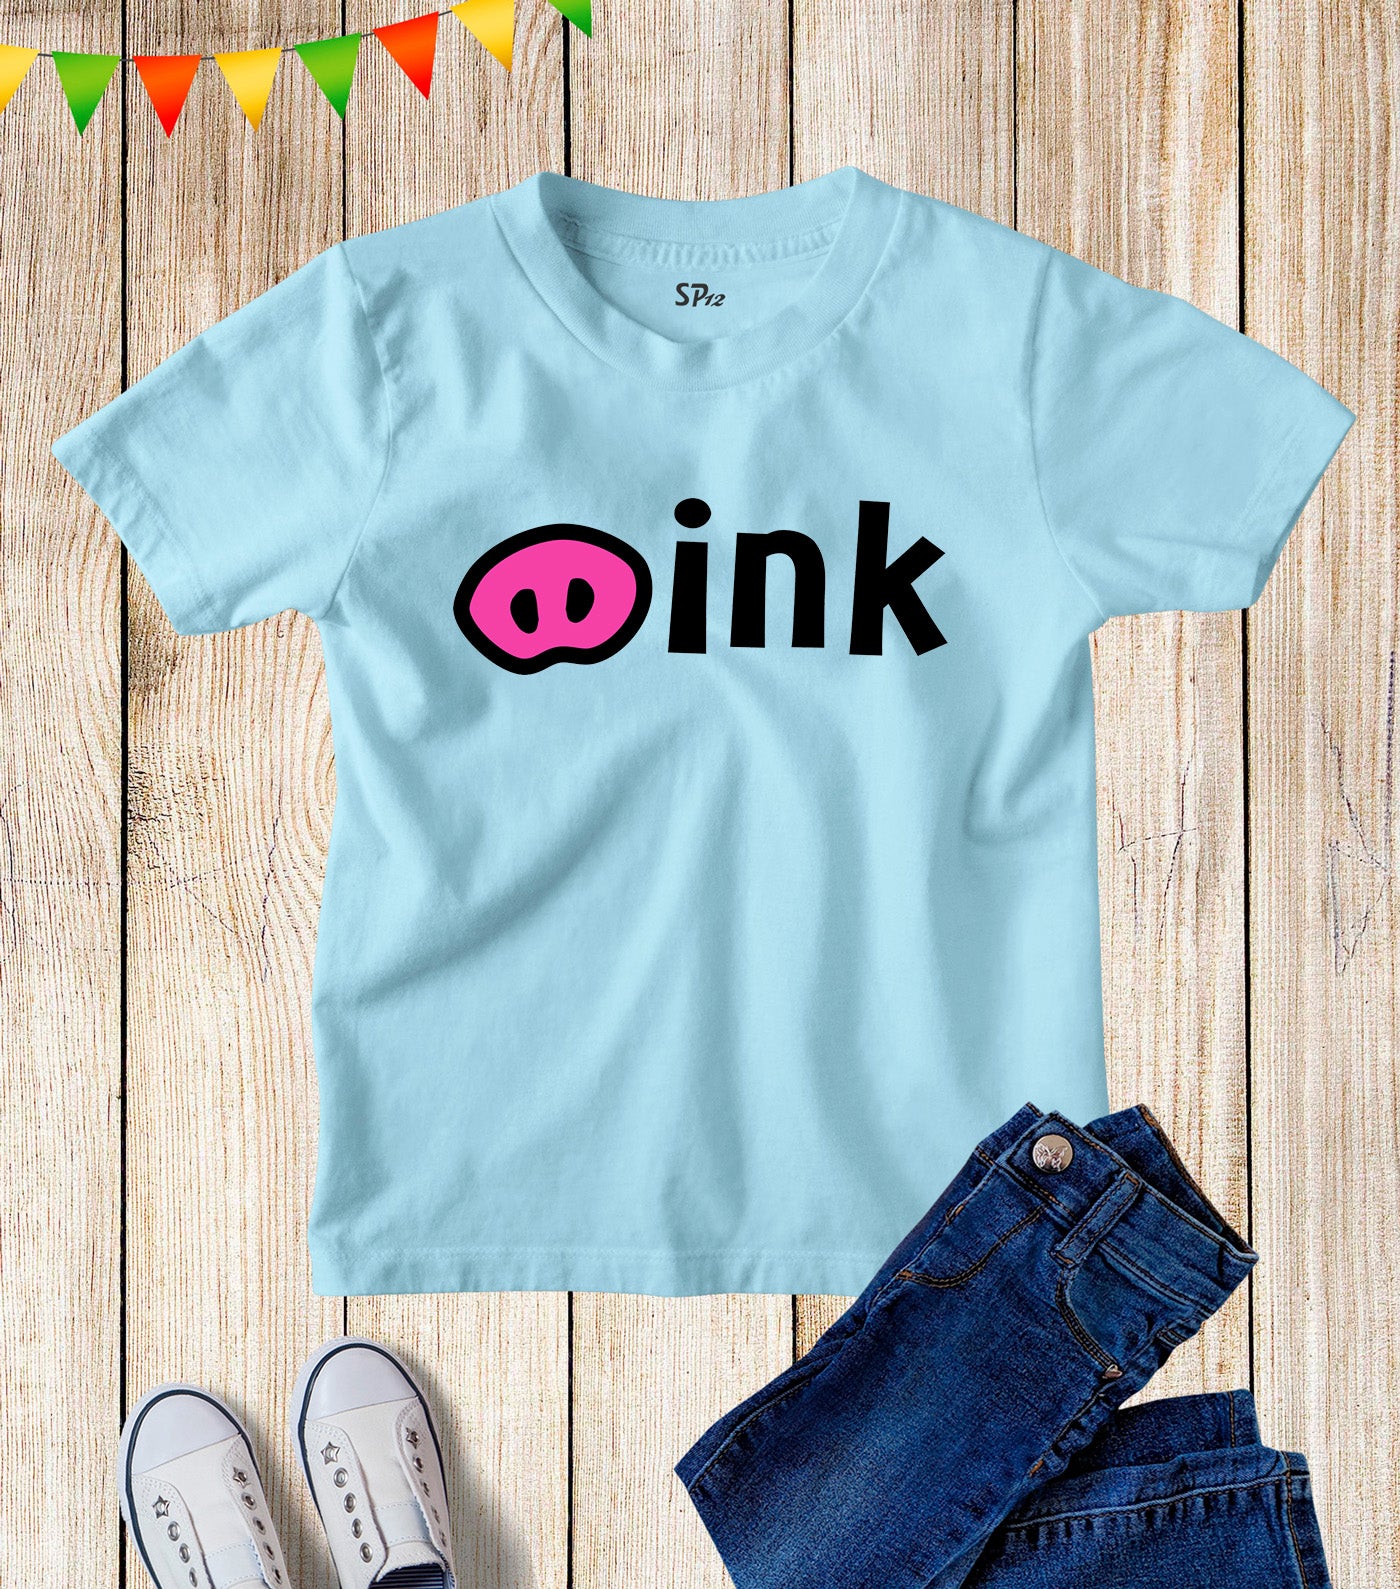 Kids Pig Nose Oink Pink Cartoon Character T Shirt